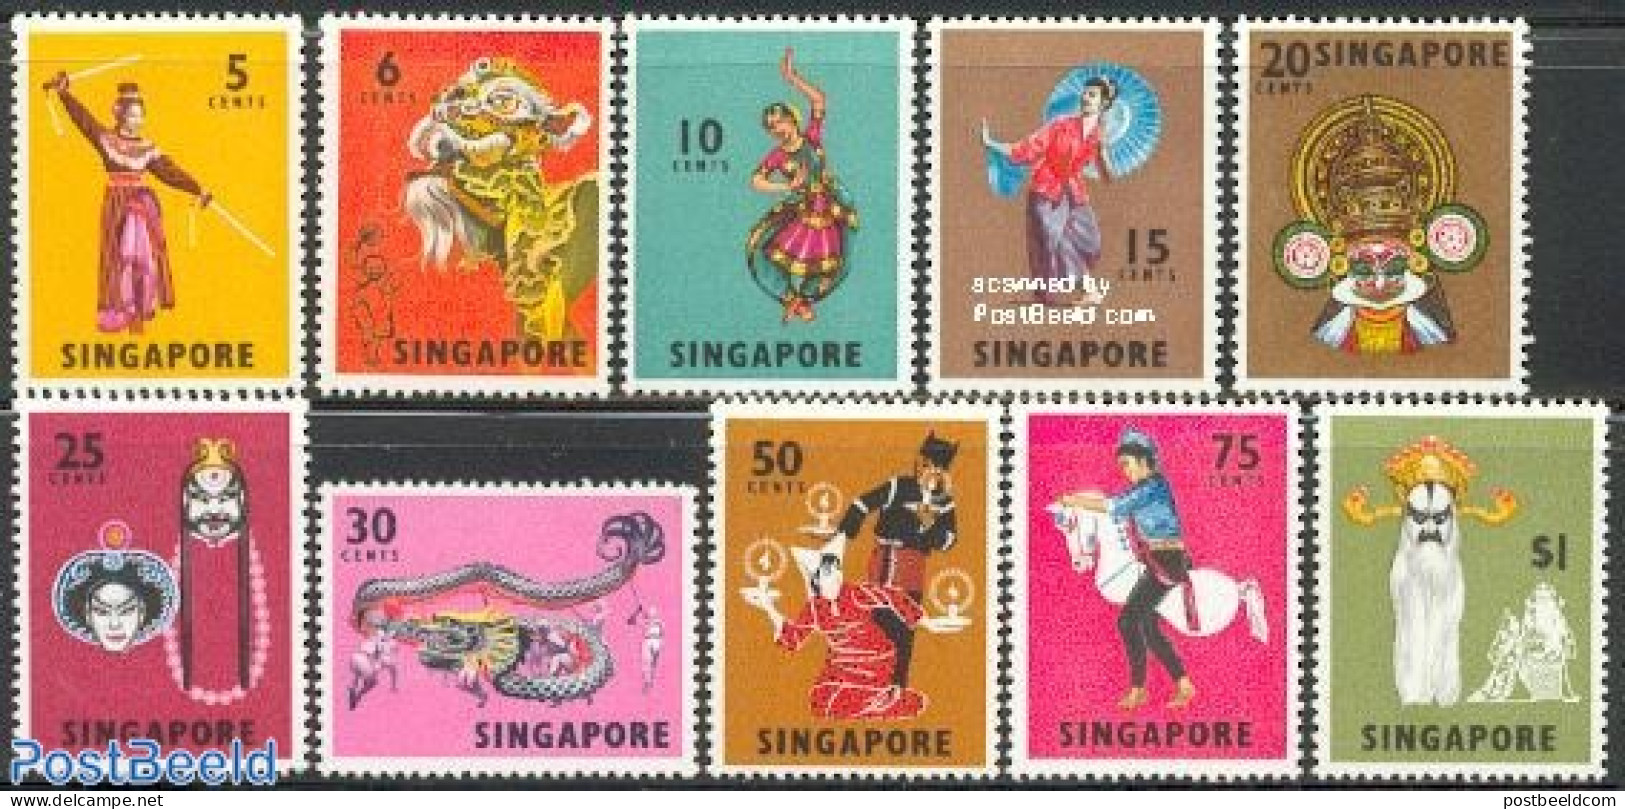 Singapore 1968 Definitives, Dances 10v, Mint NH, Performance Art - Various - Dance & Ballet - Folklore - Dance